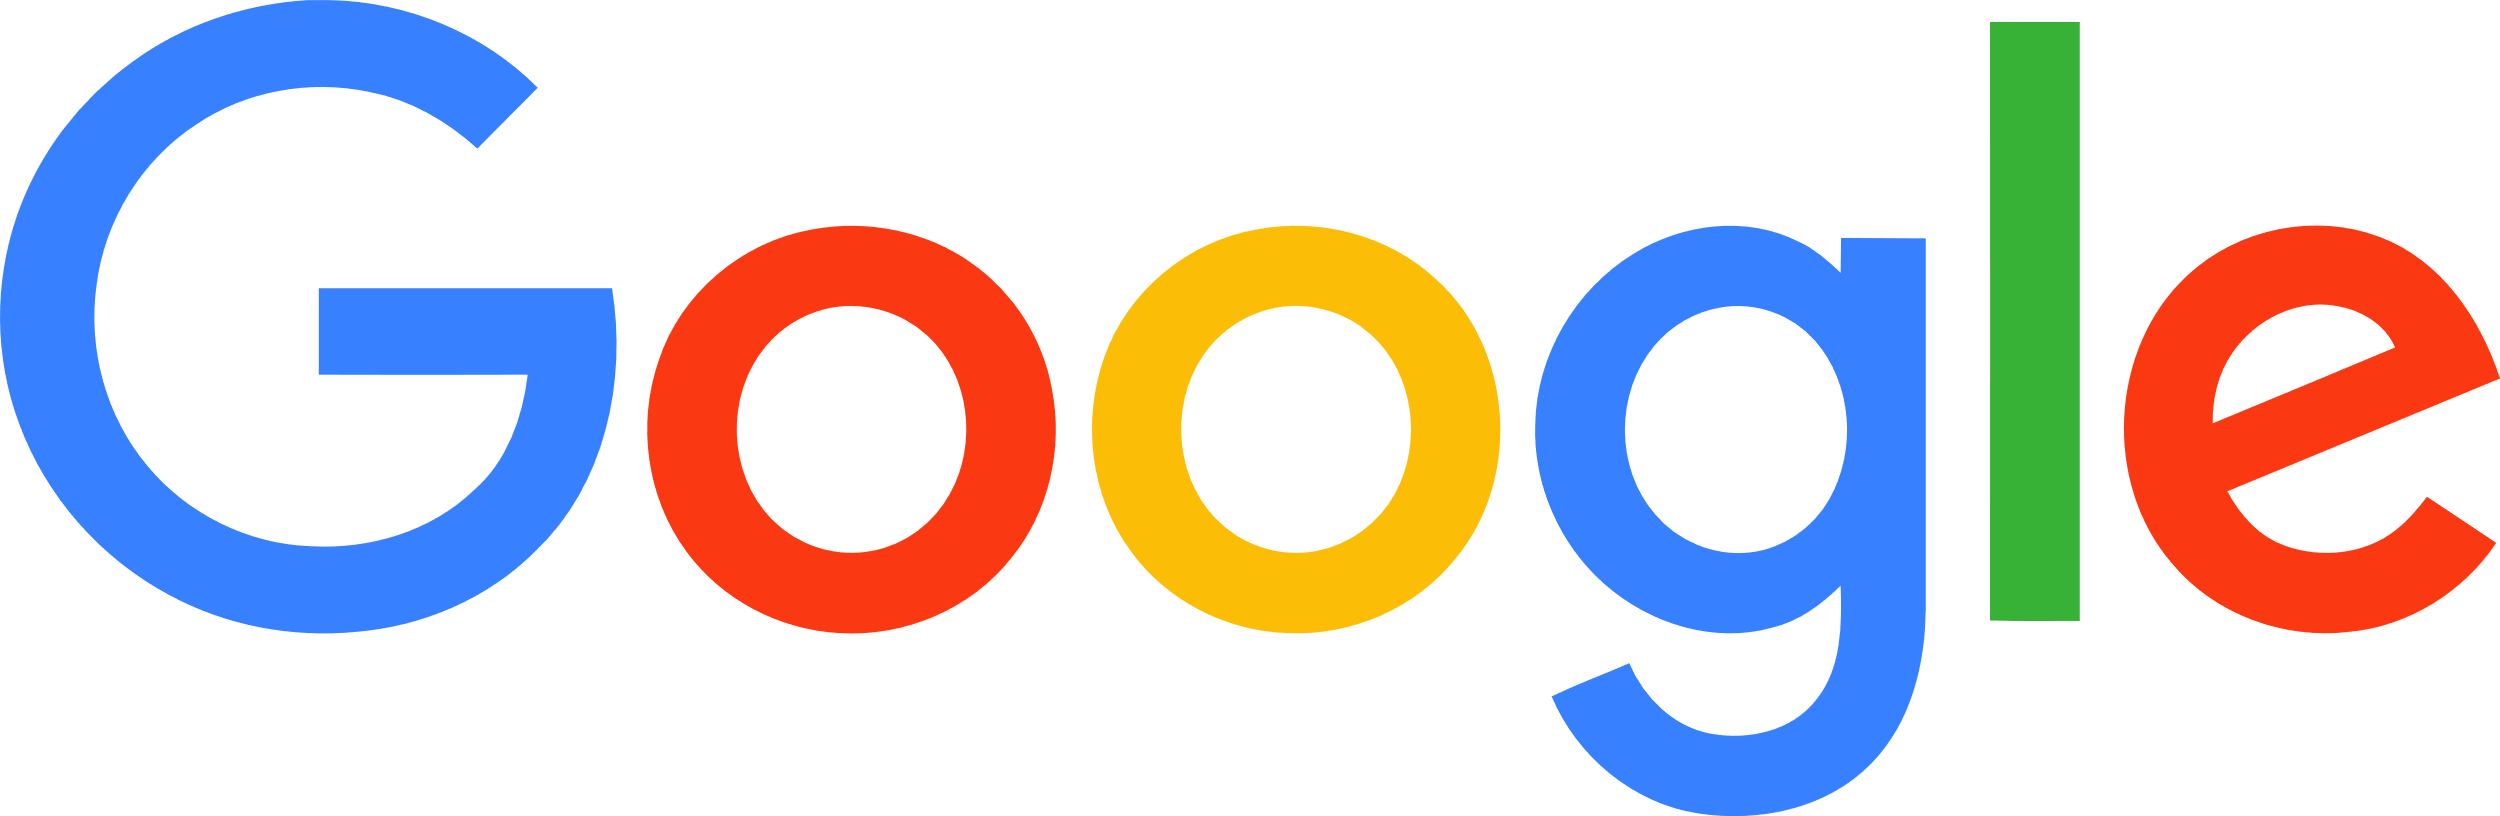 Google's New Logo, Explained! - Tech Edt